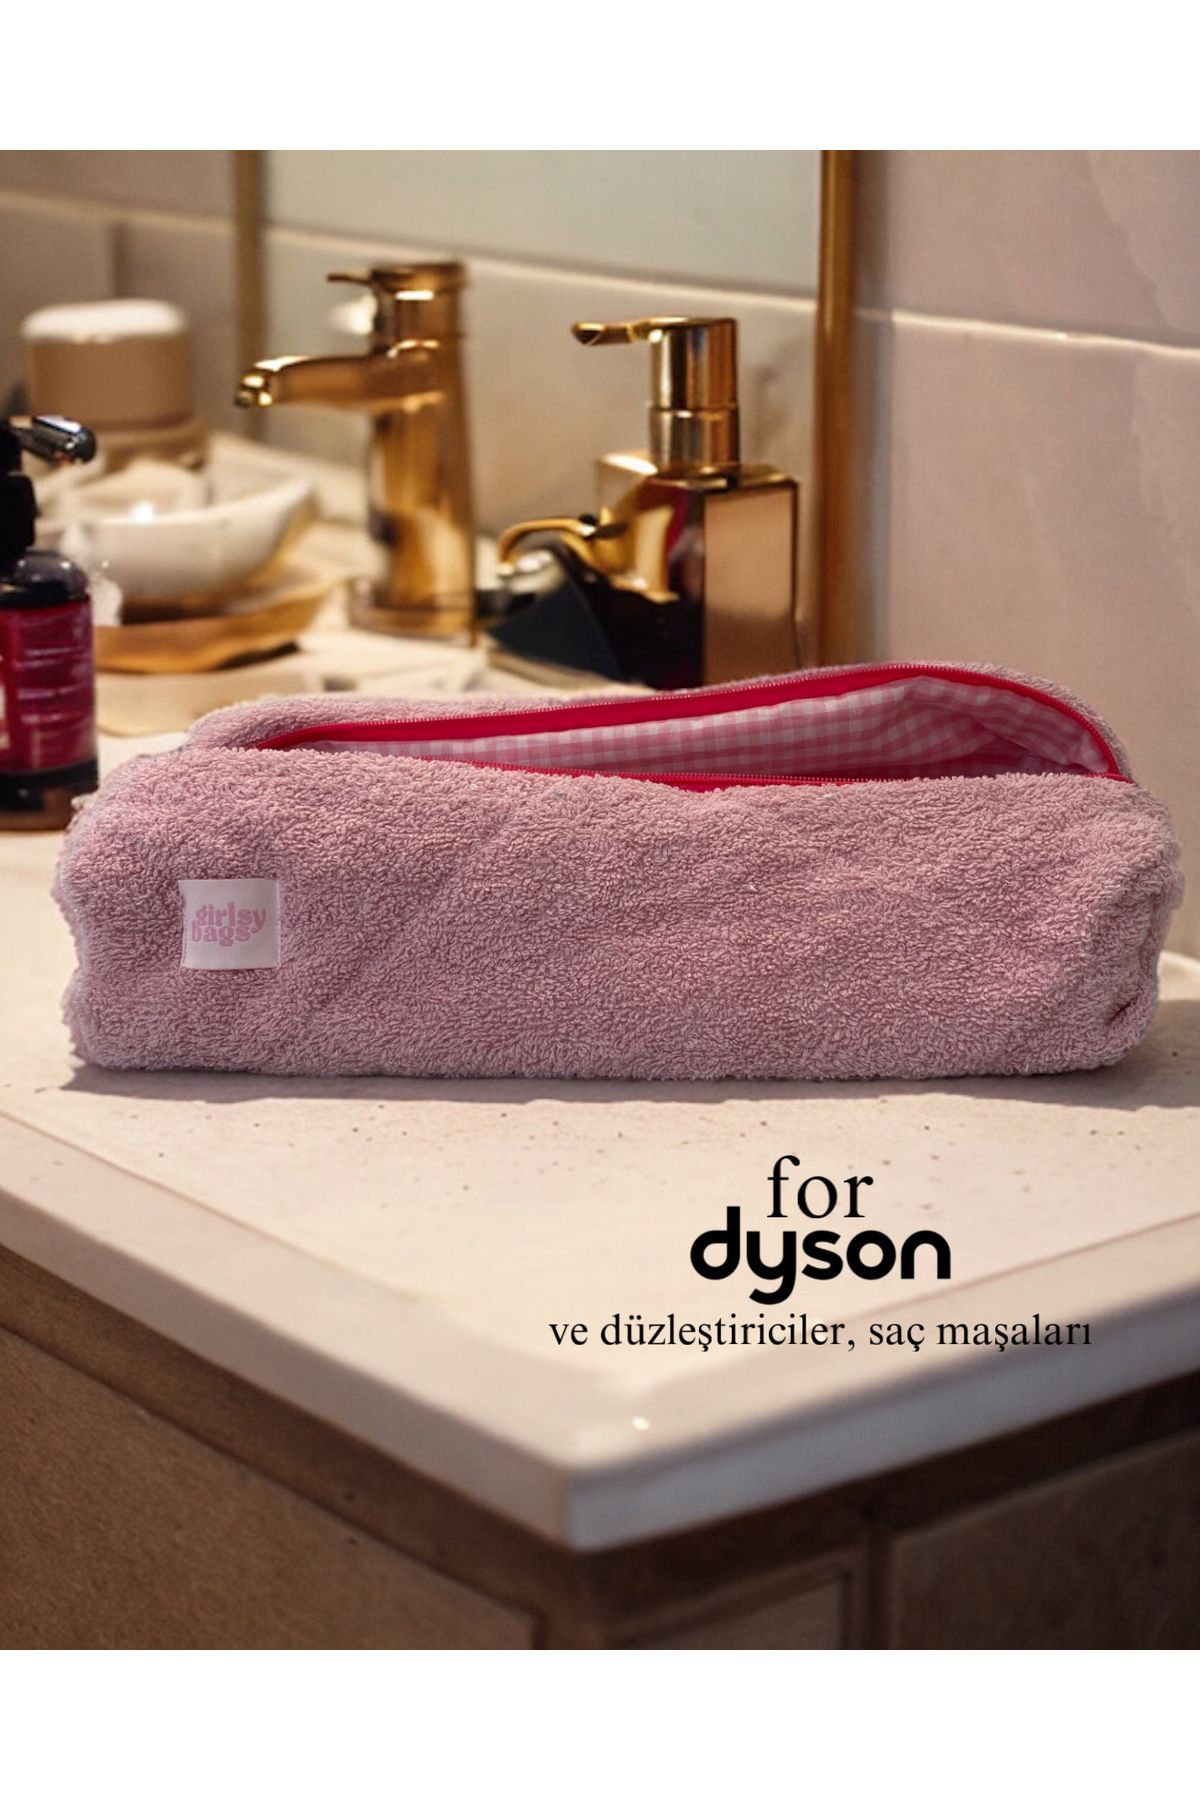 girlsybags Dyson Tüm Parçalar Için Çanta Pembe Havlu Düzleştirici Saç Maşası Çantası Büyük Makyaj Çanta Xxl